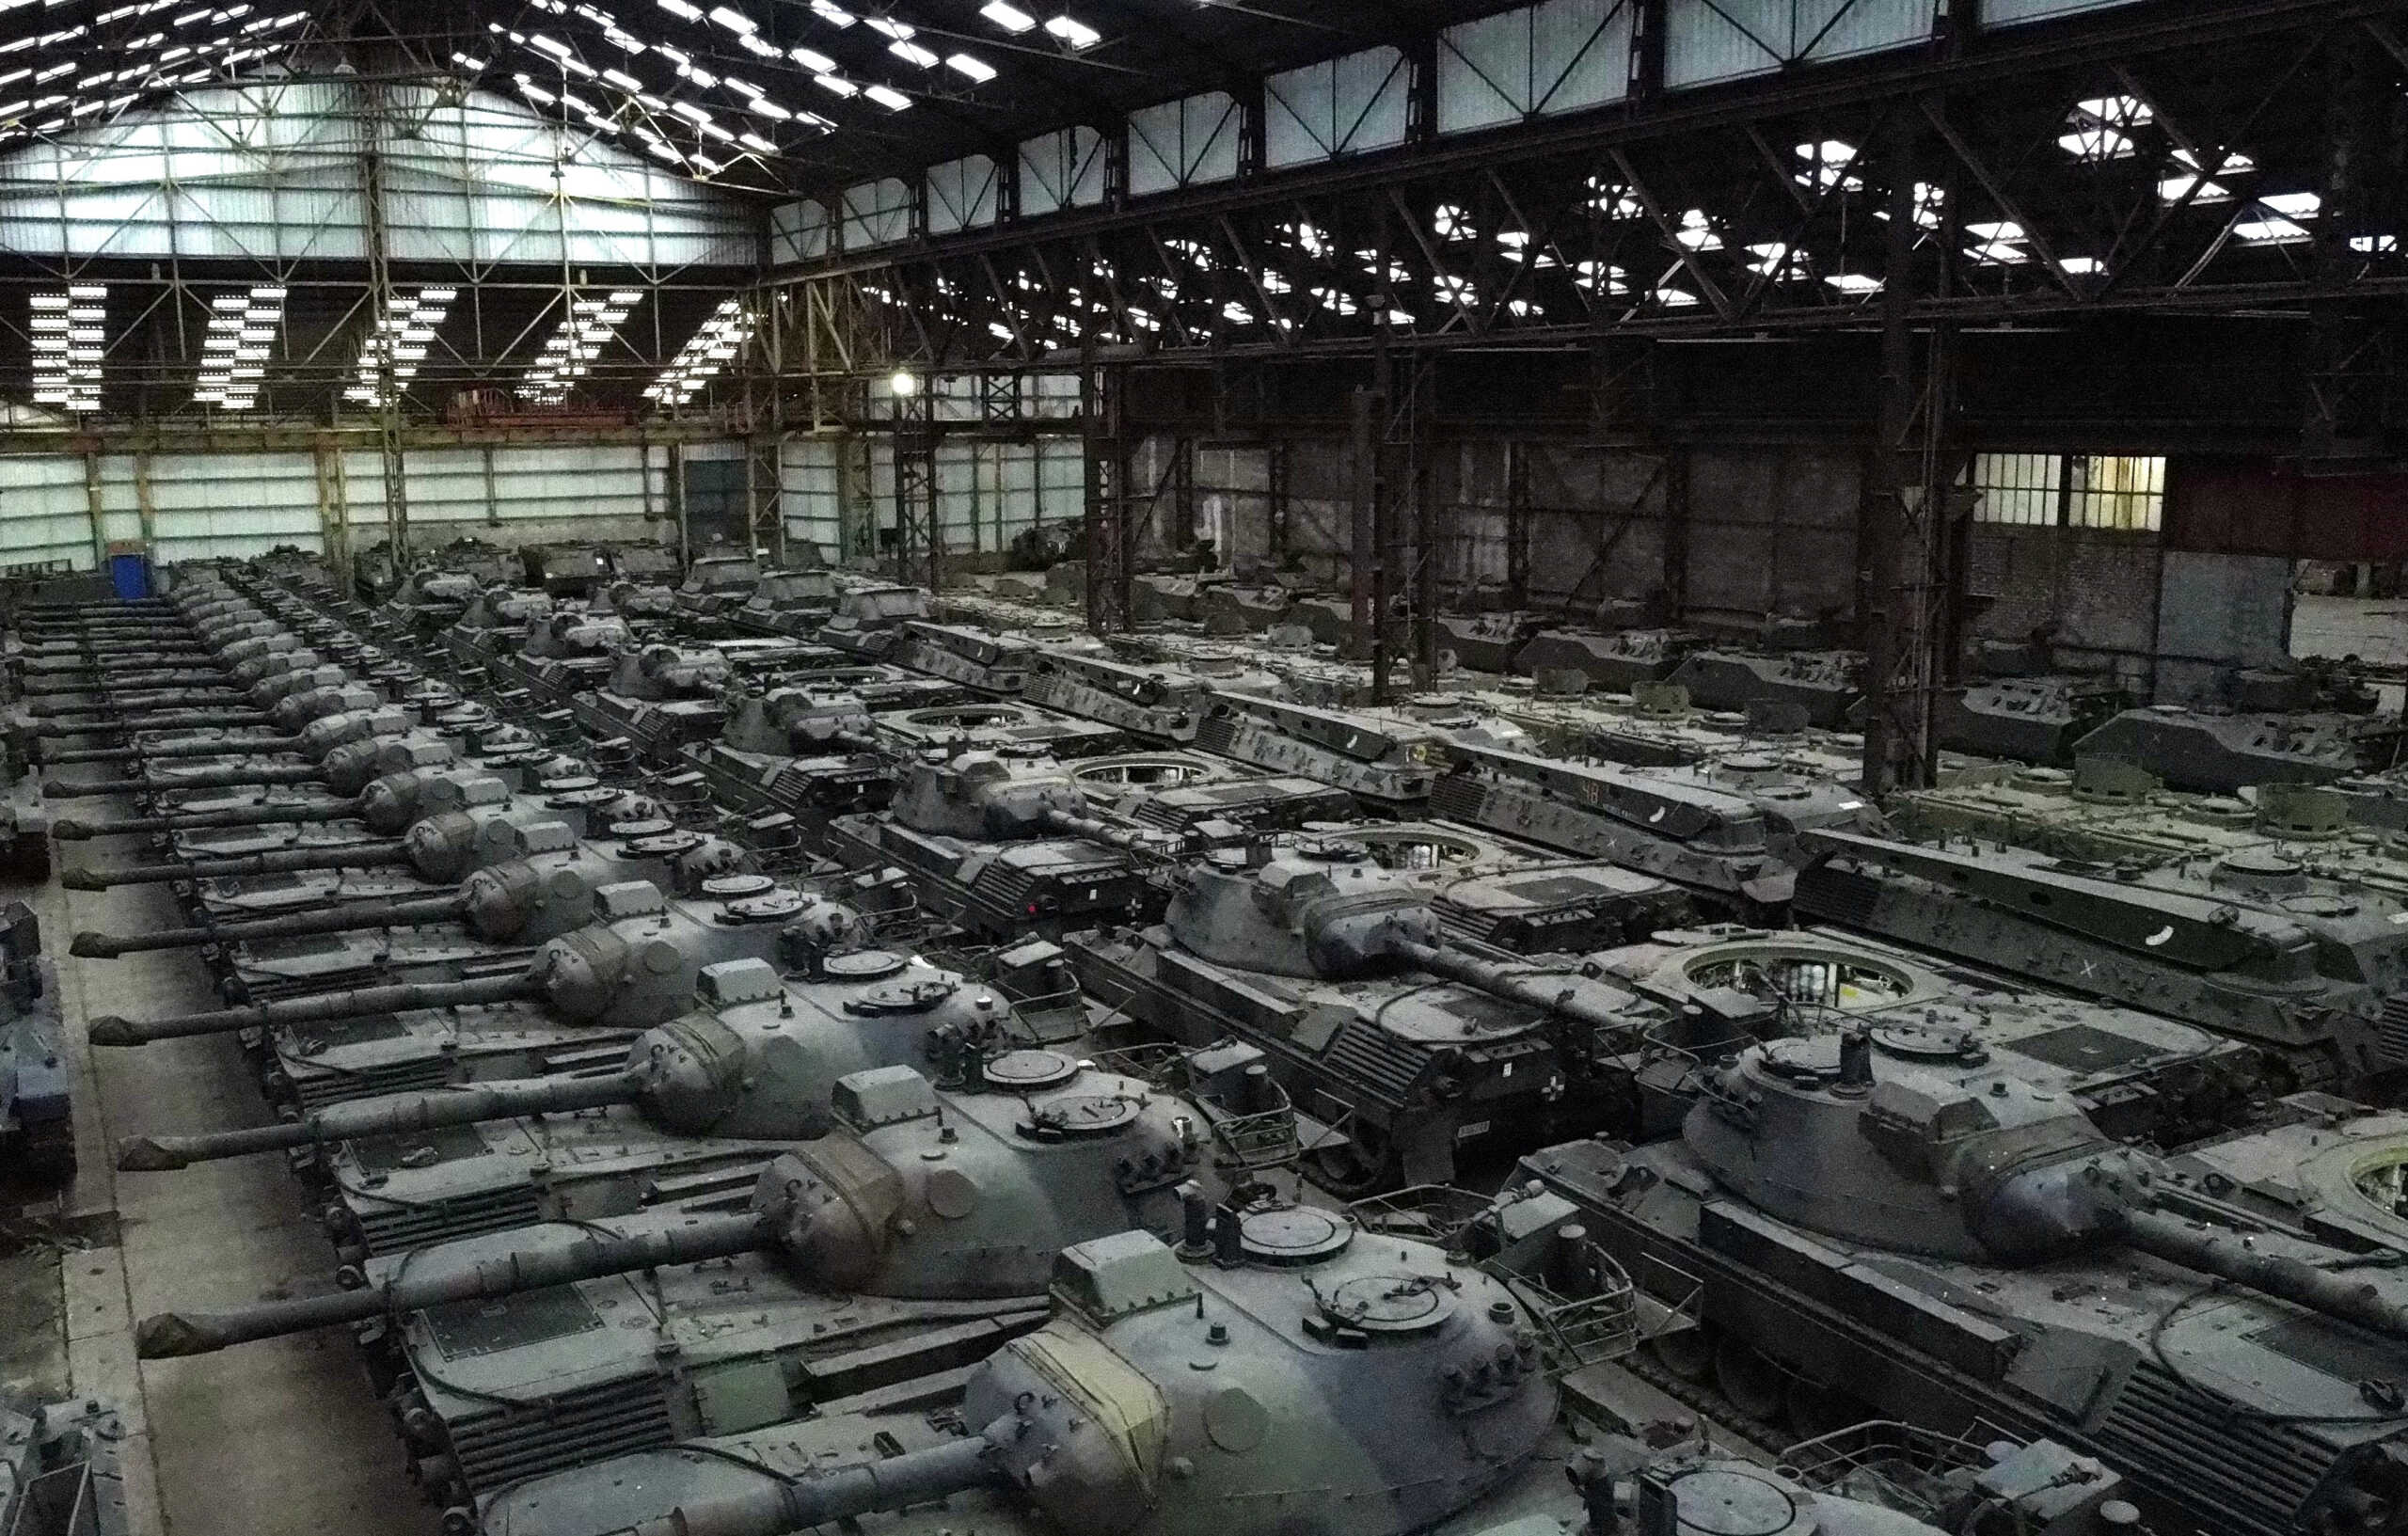 Γερμανία: Αποφάσισε να στείλει 187 άρματα μάχης Leopard 1 στην Ουκρανία, λέει το Business Insider